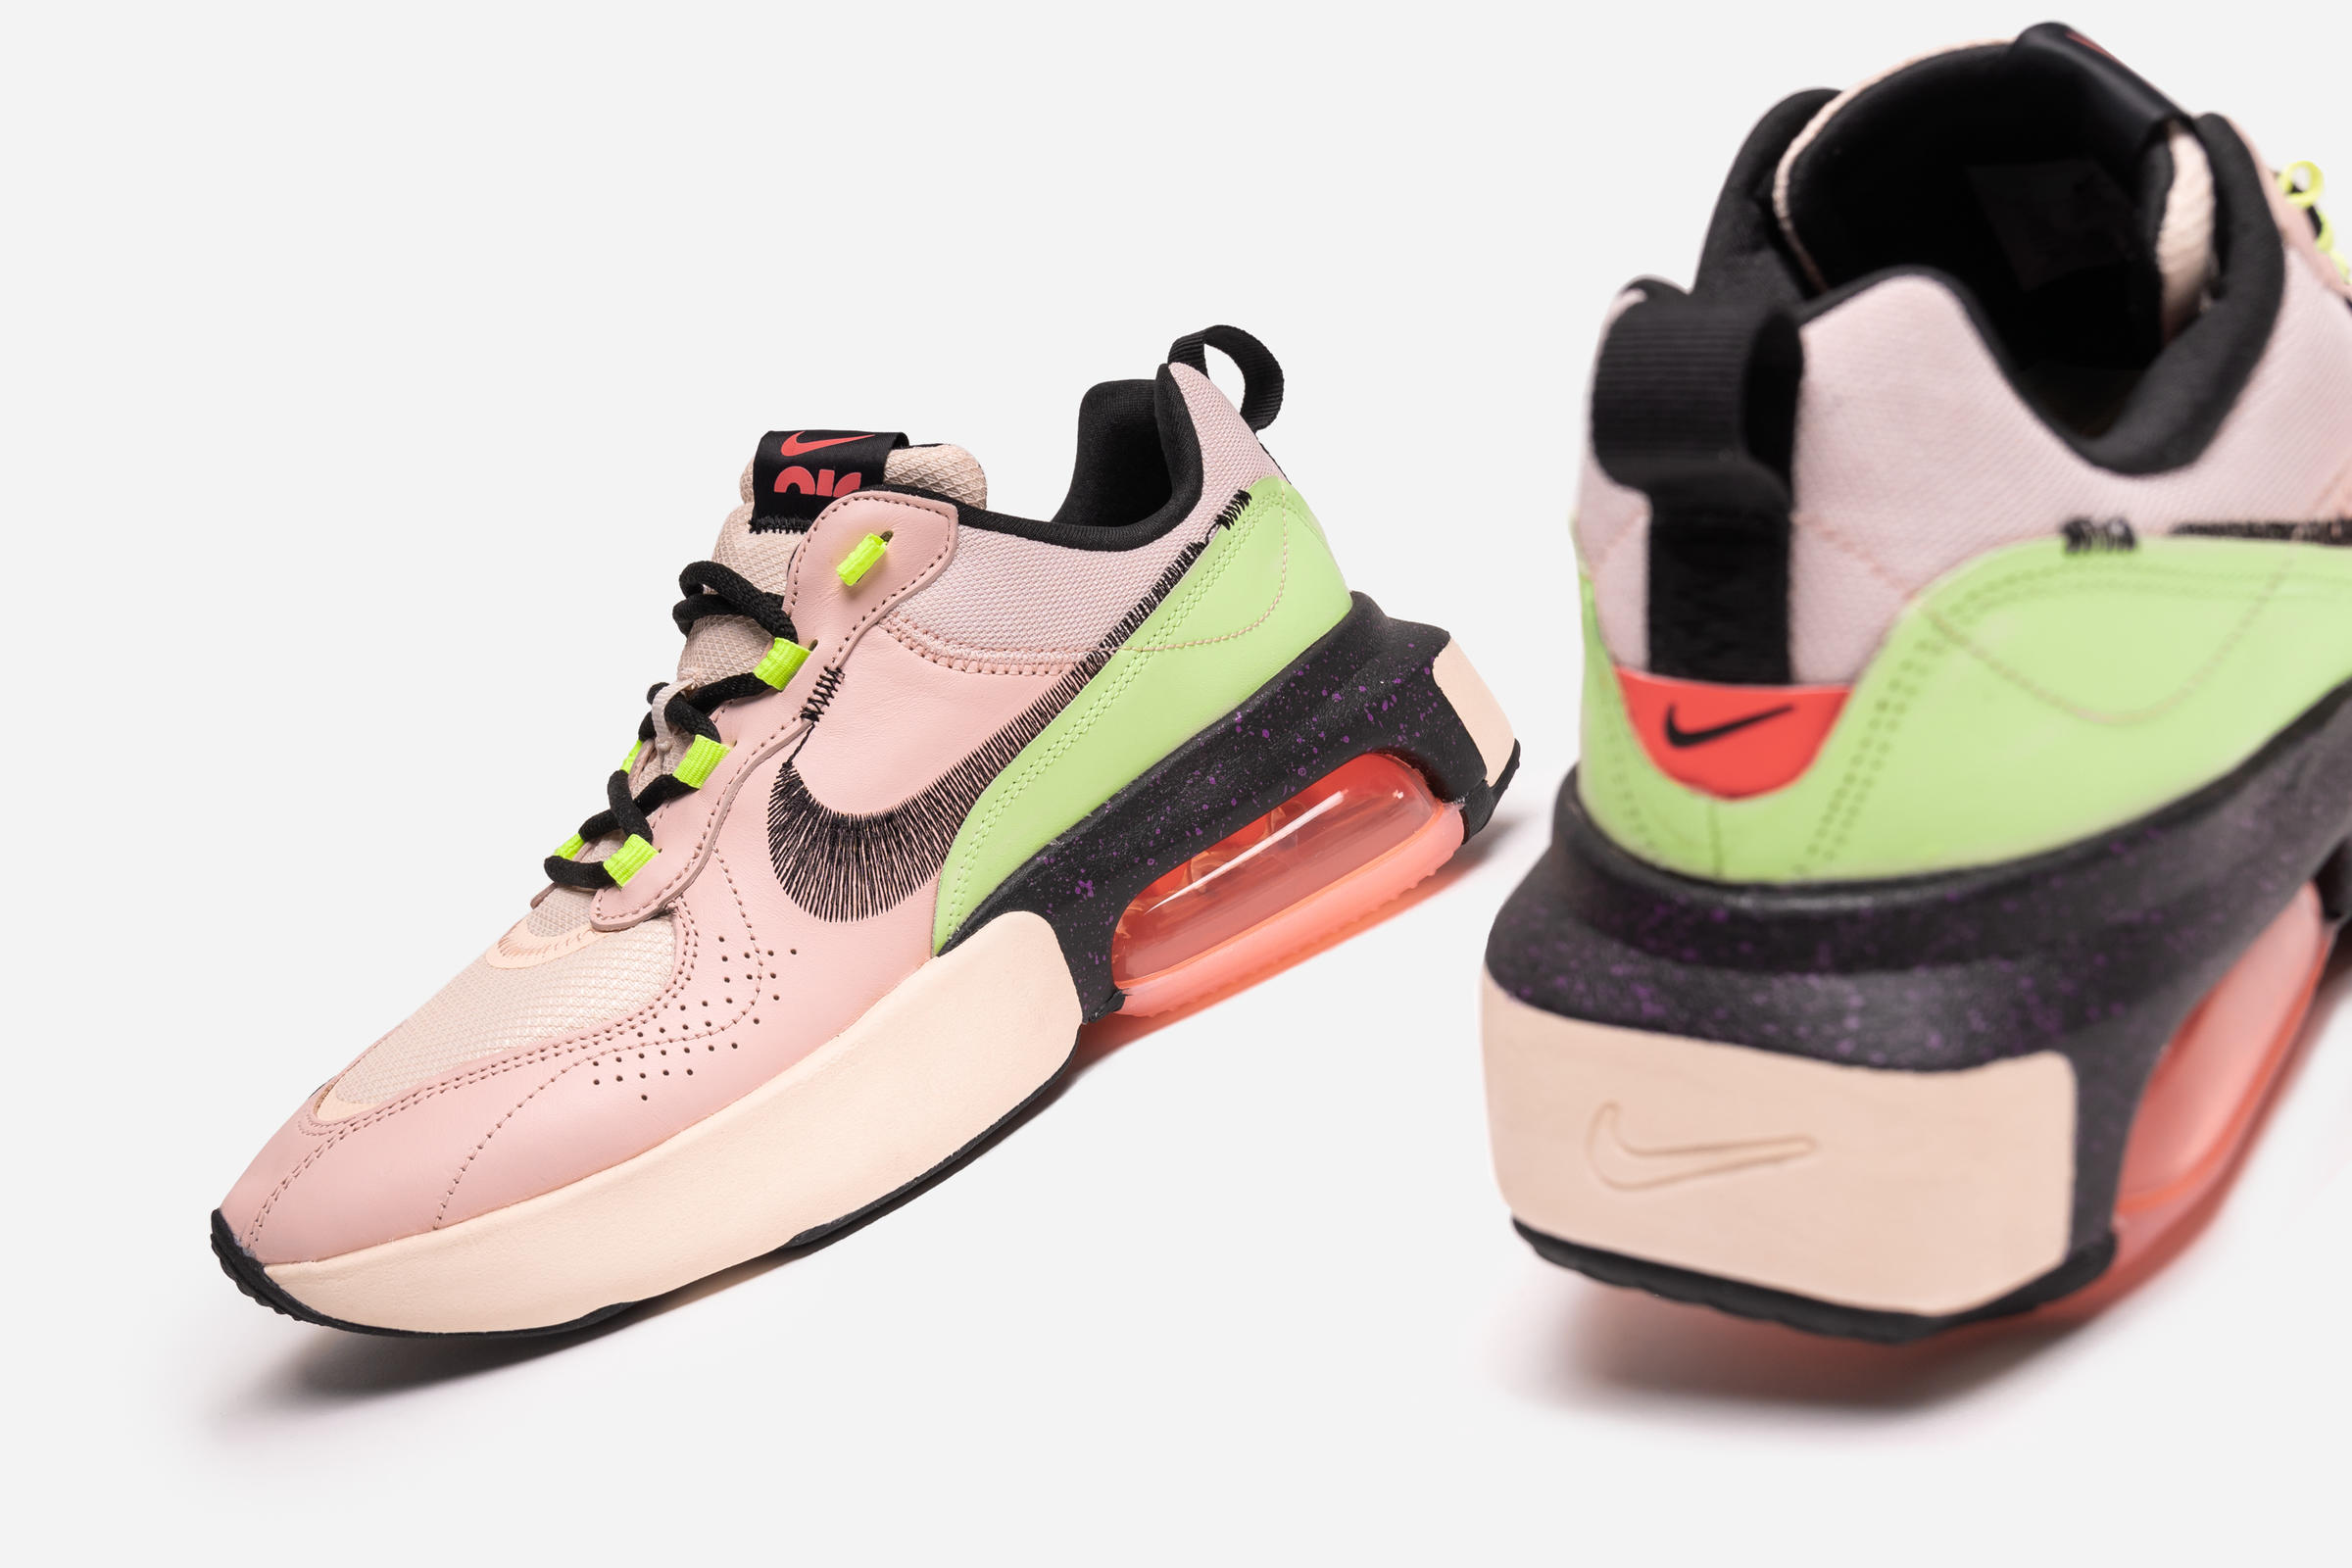 Nike WMNS AIR MAX VERONA QS "Guava Ice"